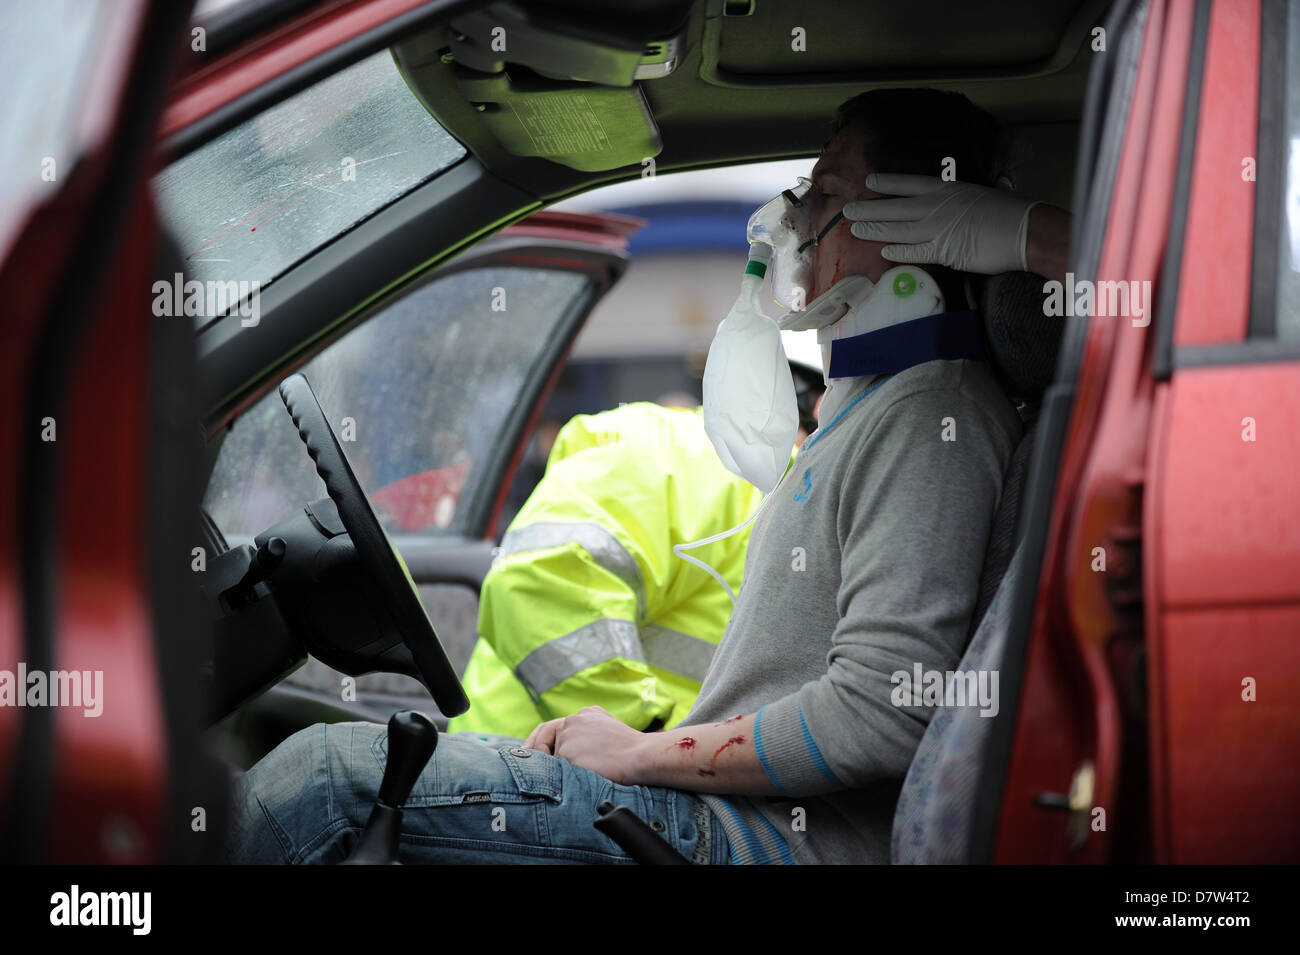 Un accident de la route (art) la victime est traitée par une équipe d'ambulanciers après un accident de voiture. Banque D'Images